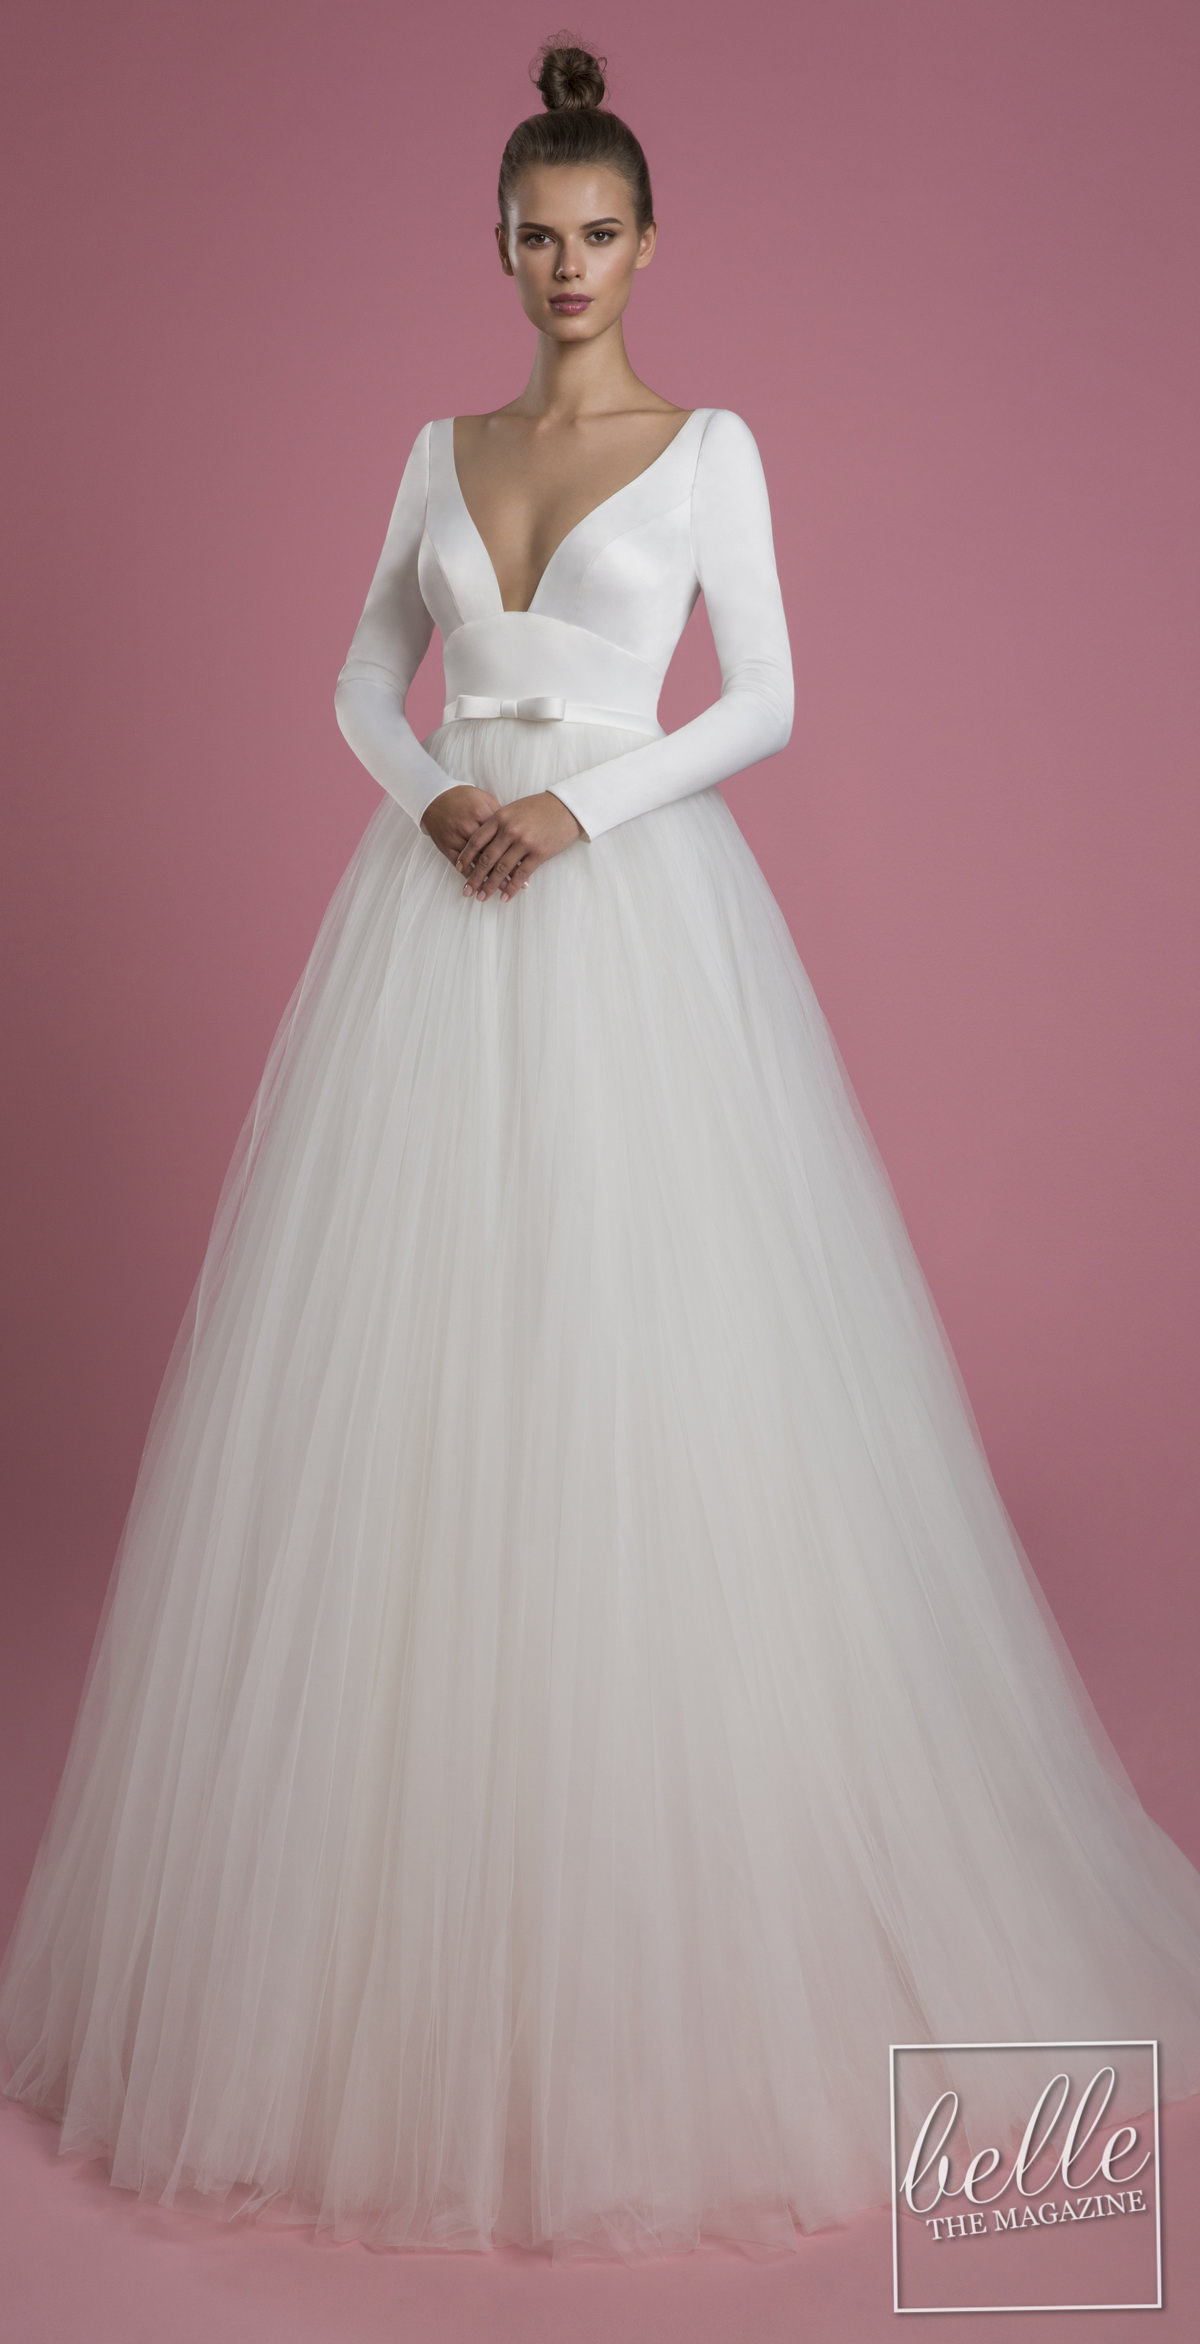 Wedding dress trends 2021 - Deep V Necklines - PNINA TORNAI